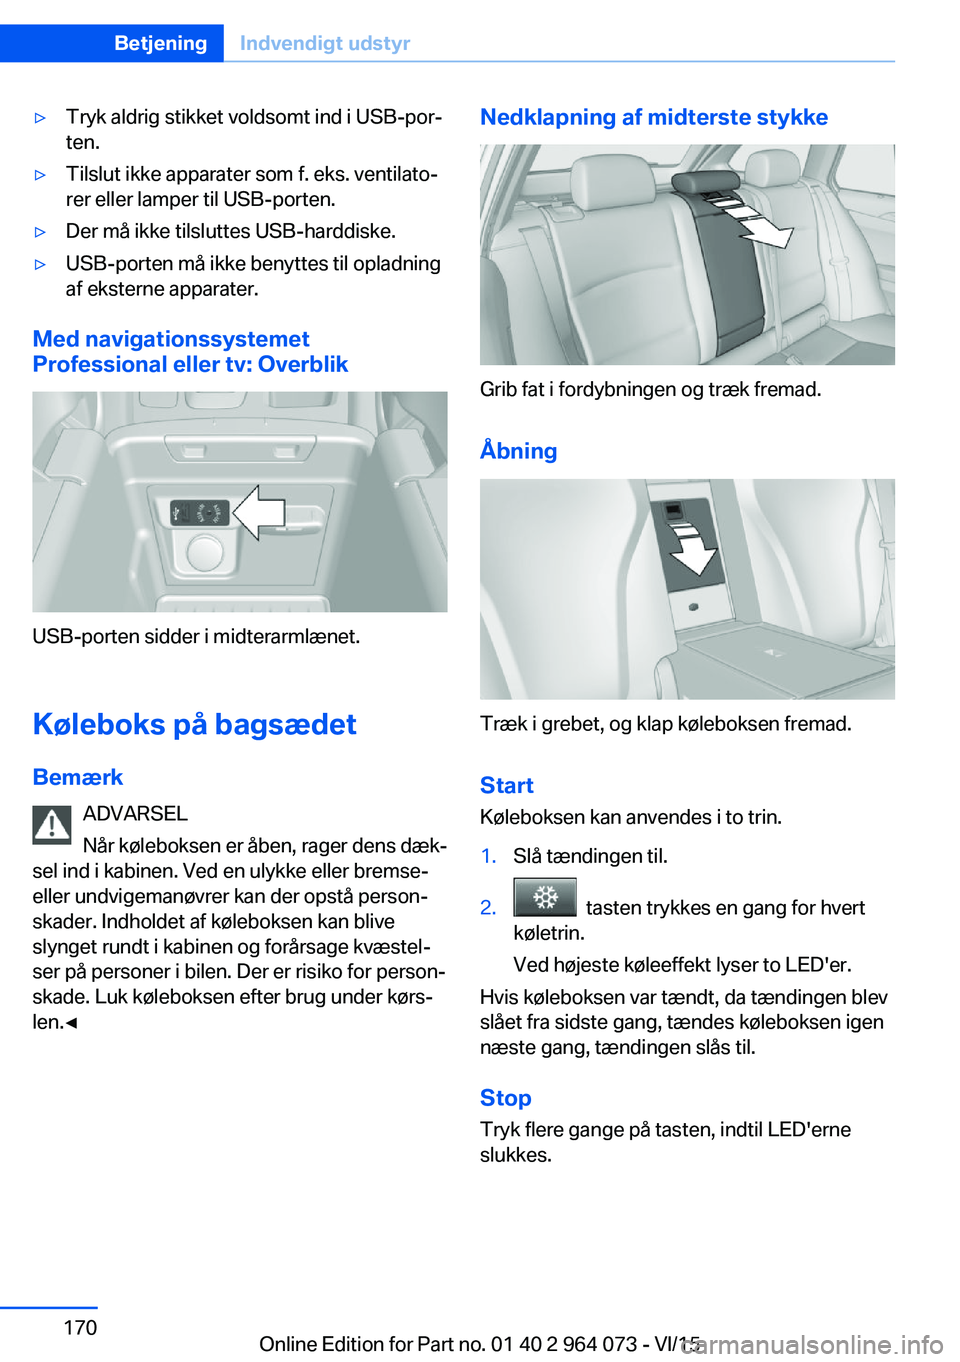 BMW X6 M 2016  InstruktionsbØger (in Danish) ▷Tryk aldrig stikket voldsomt ind i USB-por‐
ten.▷Tilslut ikke apparater som f. eks. ventilato‐
rer eller lamper til USB-porten.▷Der må ikke tilsluttes USB-harddiske.▷USB-porten må ikke 